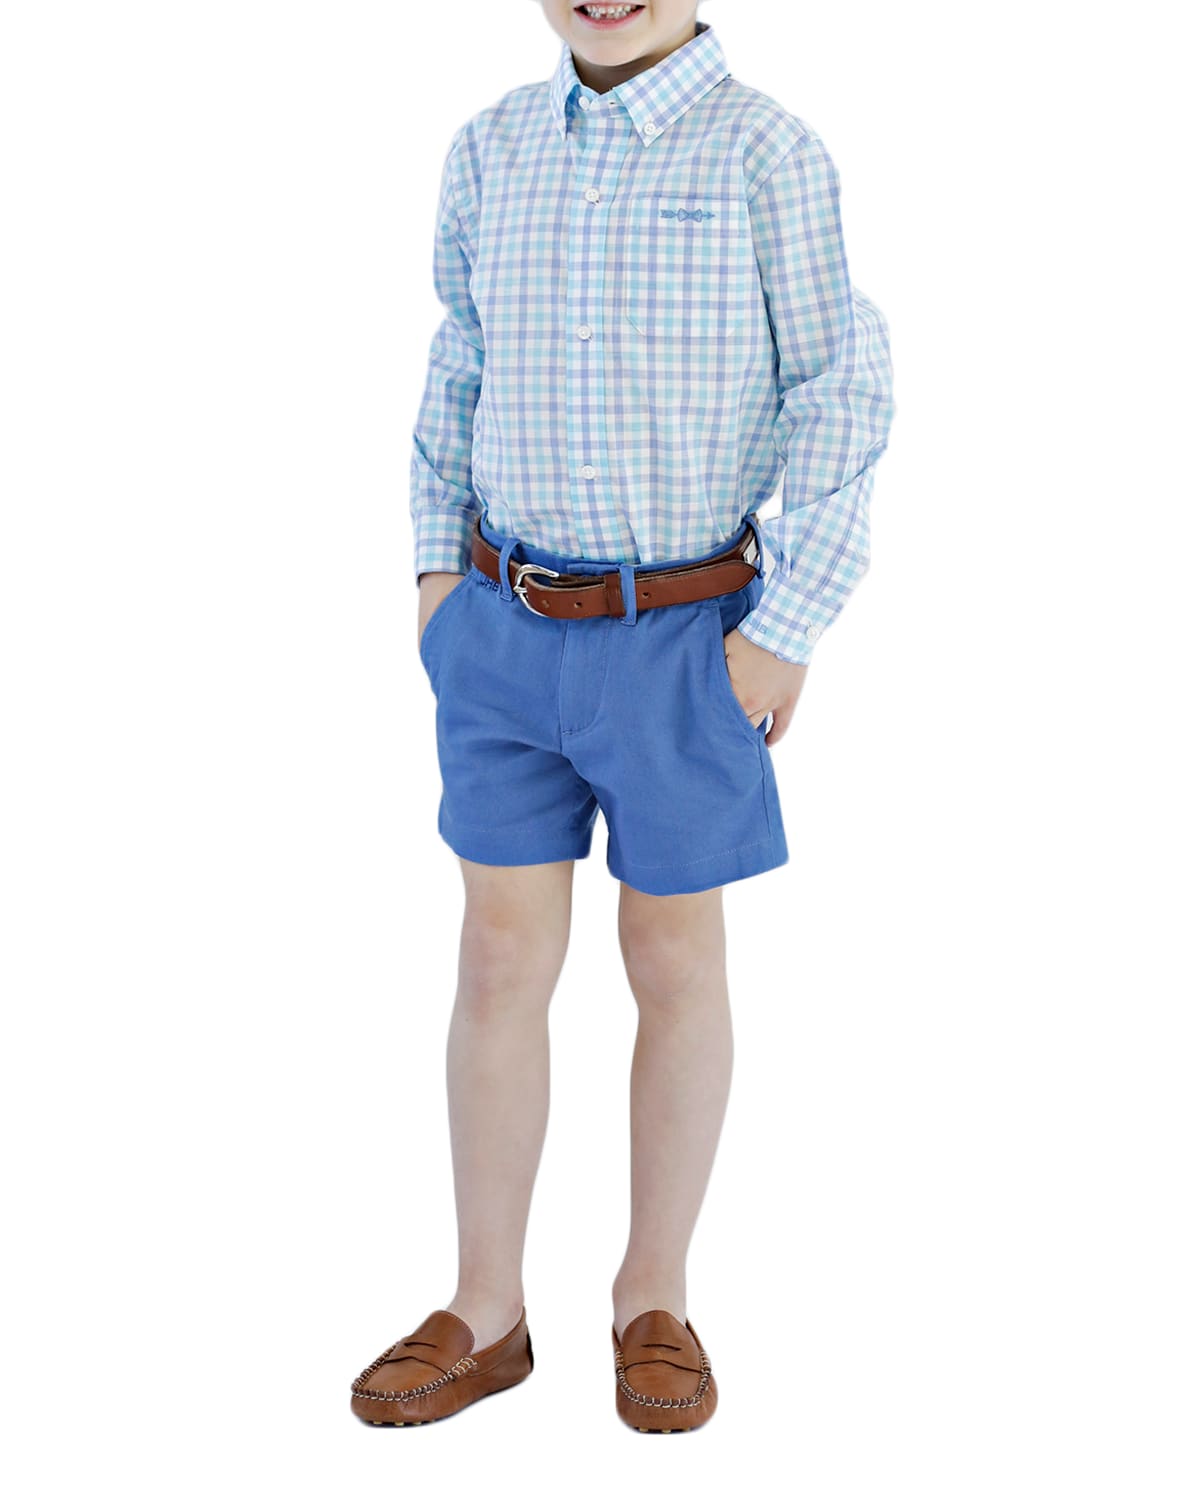 Brown Bowen And Company Kids' Bowen Arrow Button-down Shirt - Monogram Option In Blue/auqua Plaid